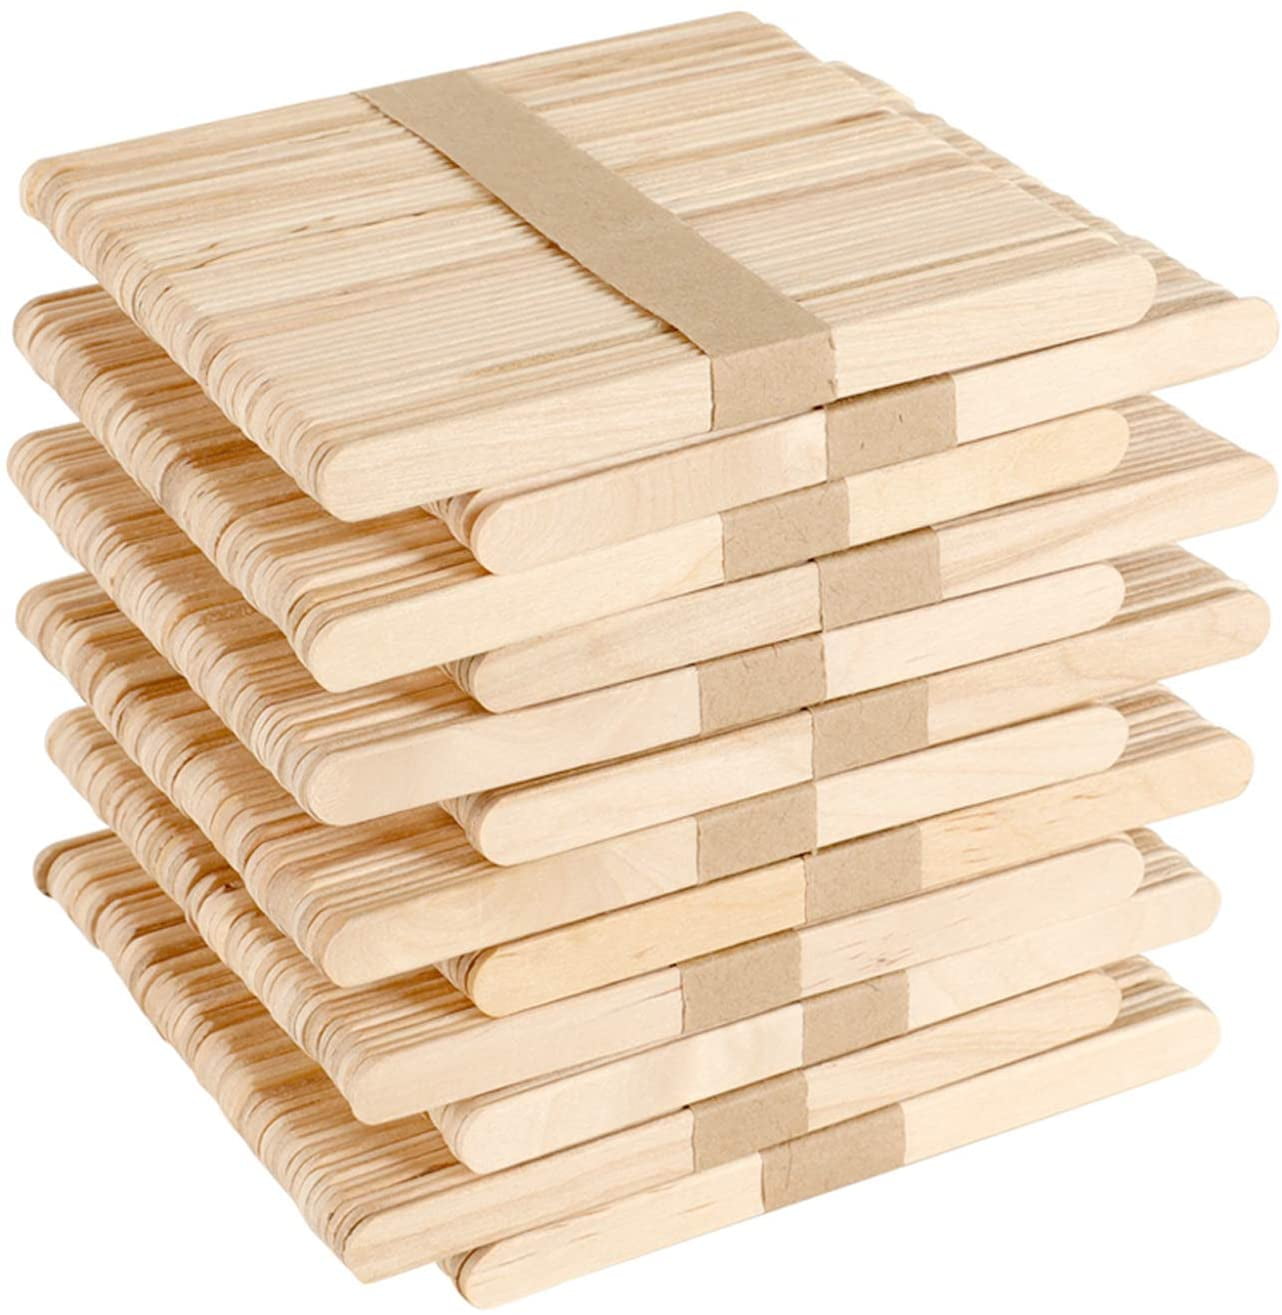 600 Stück Eisstiele aus Holz, Holzspatel Basteln, Holzstäbchen zum Basteln  Umrühren Holzstiele für Eis Holzstab Stiele, Holzspatel Wachs Holzspachtel